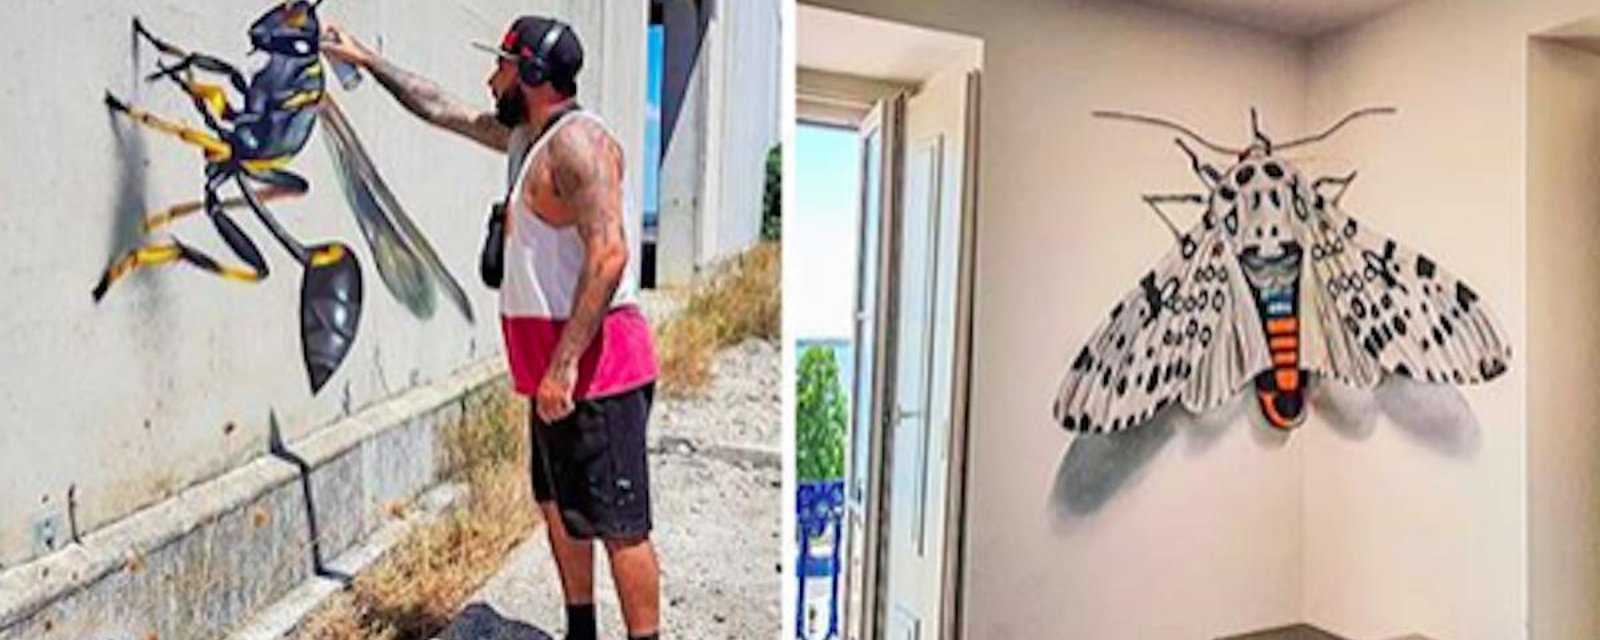 Un artiste de rue réalise des graffitis en 3D qui mélangent l’art et la réalité